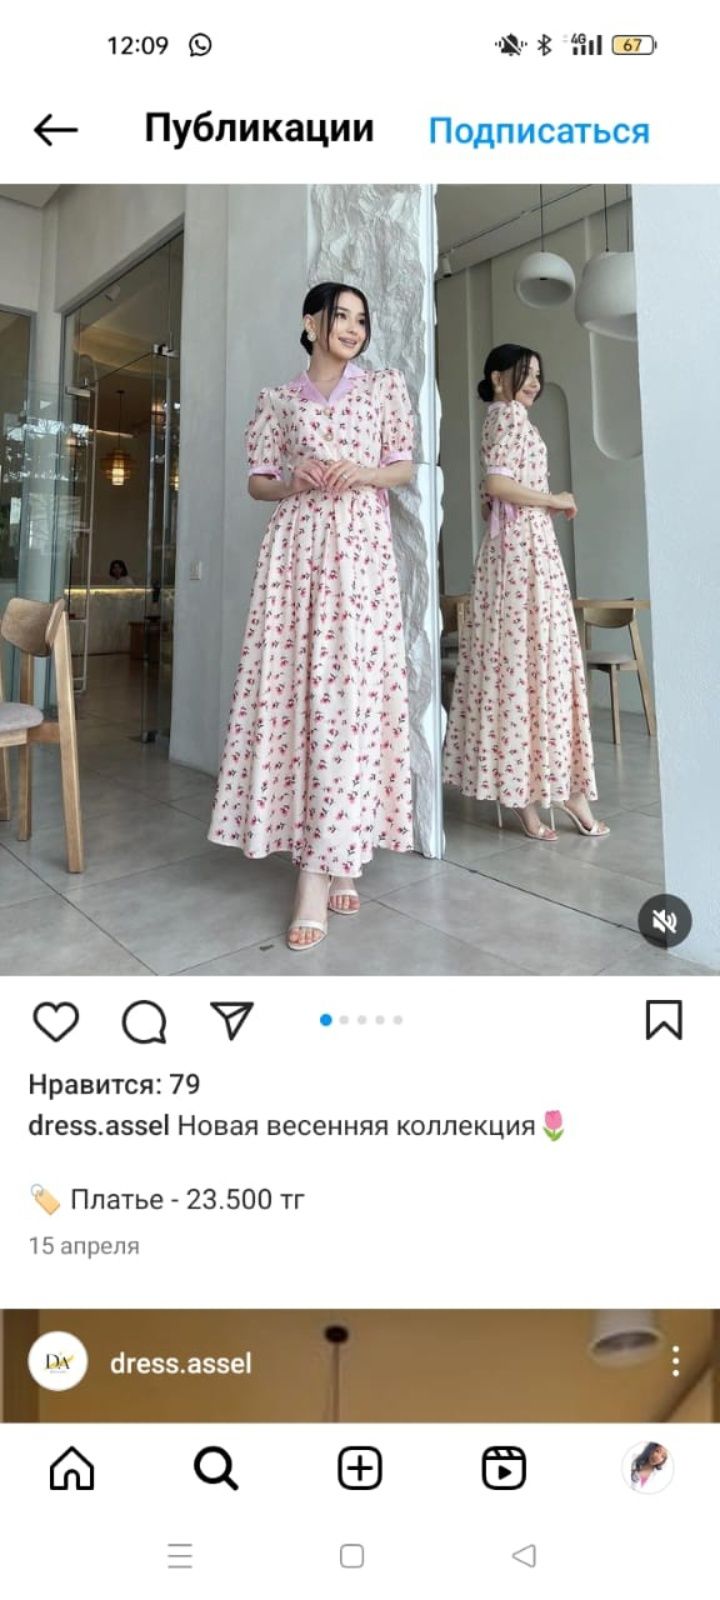 Женский платье                                                      .